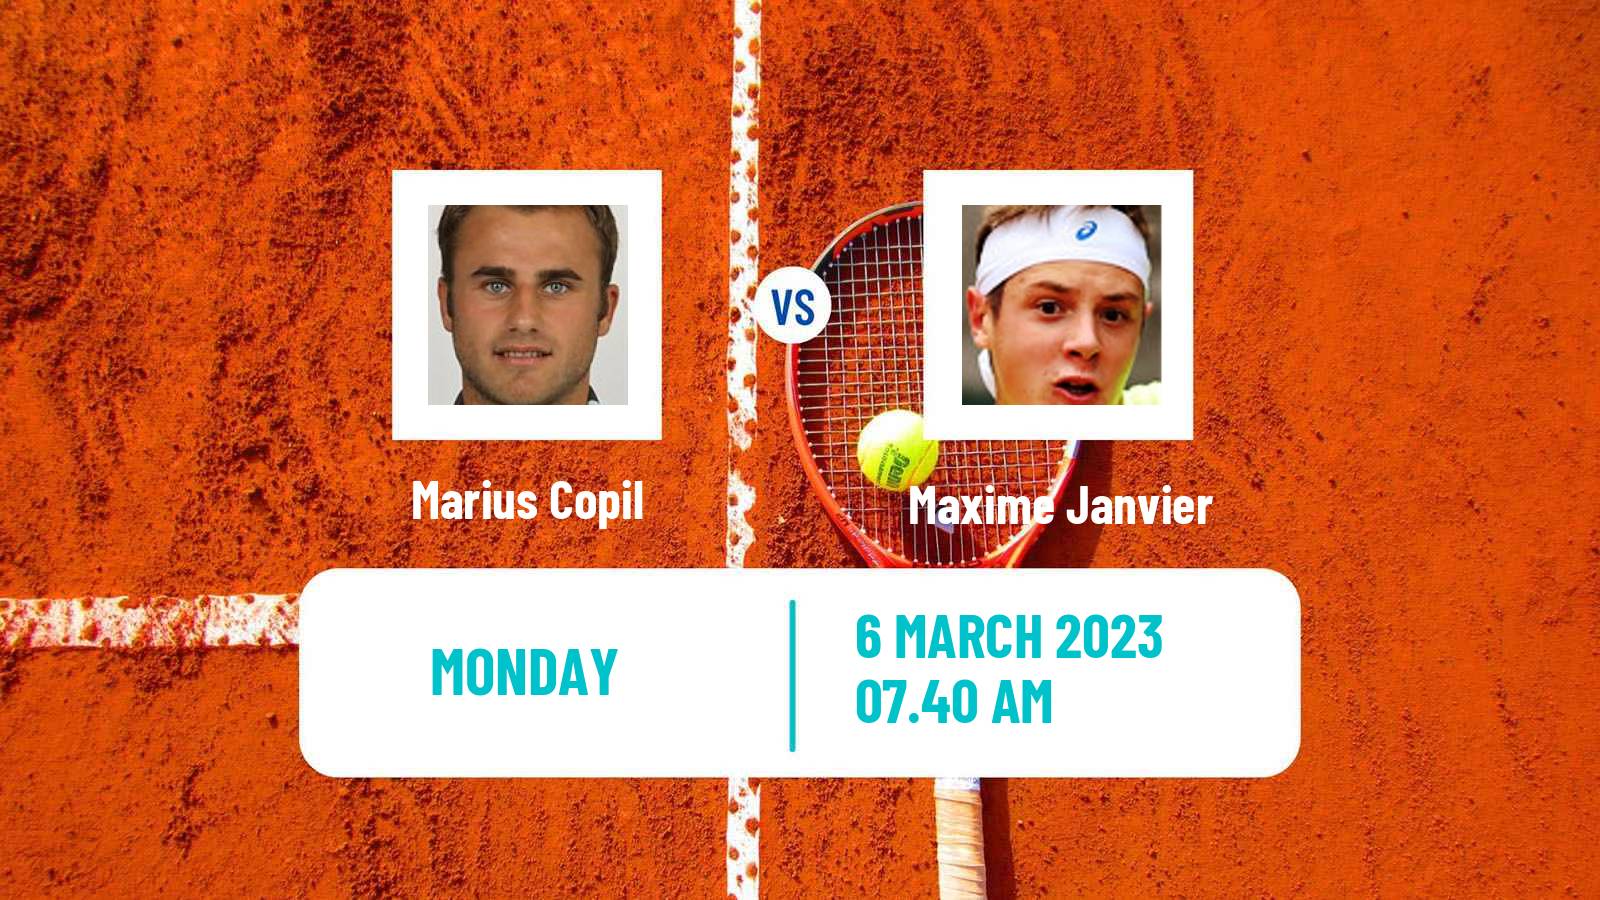 Tennis ATP Challenger Marius Copil - Maxime Janvier